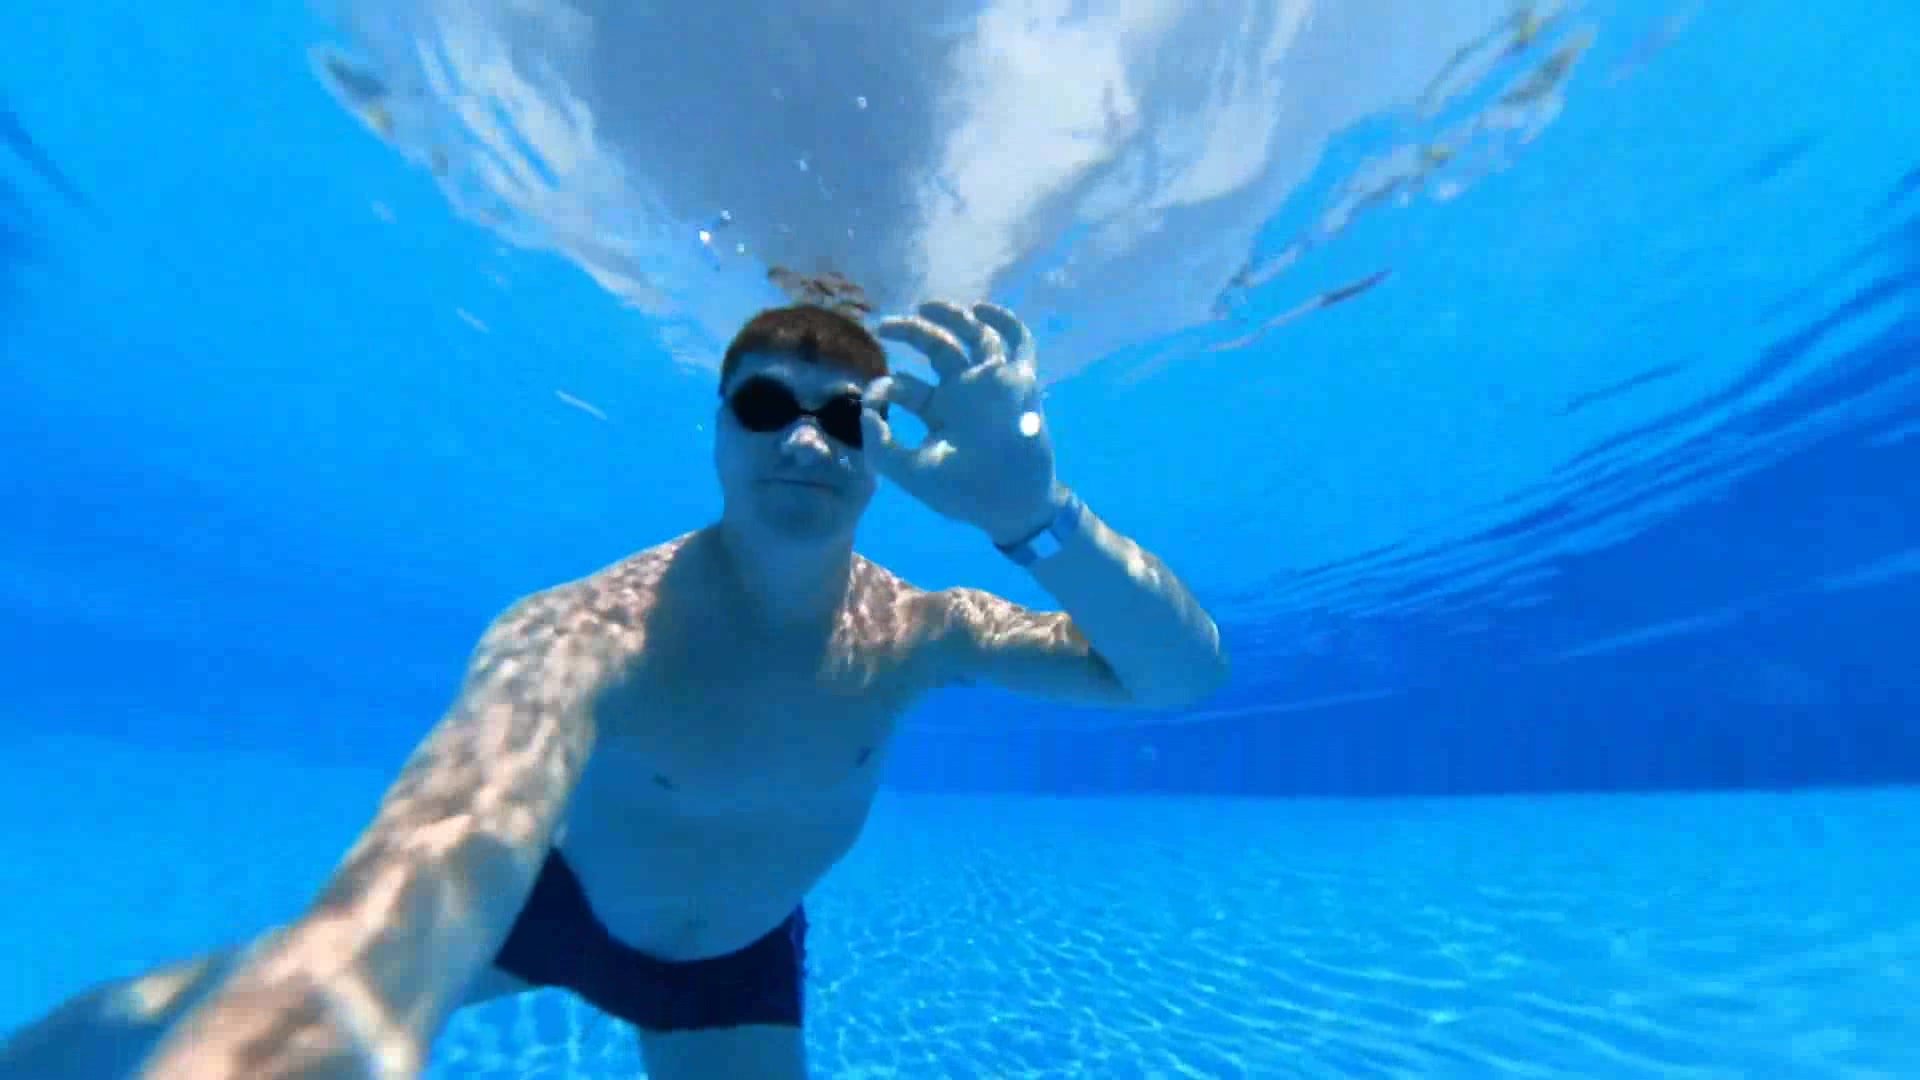 Underwater selfie in pool